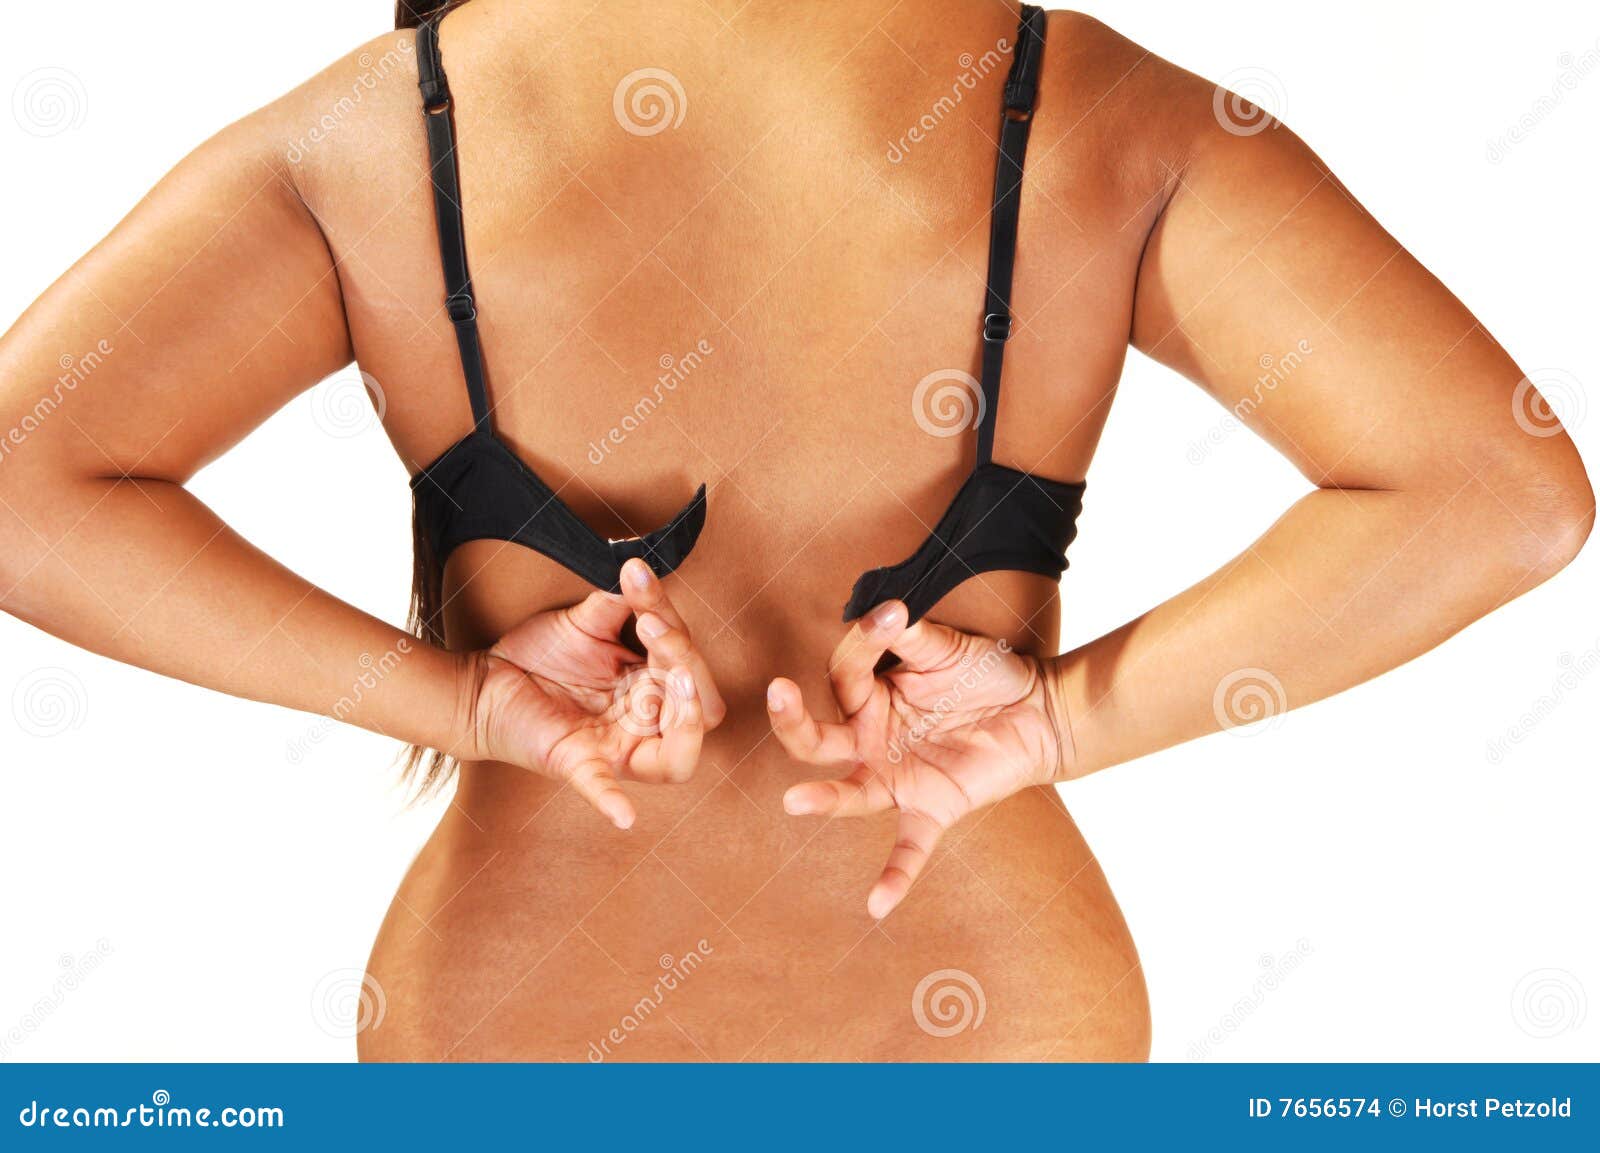 voyeur putting on a bra